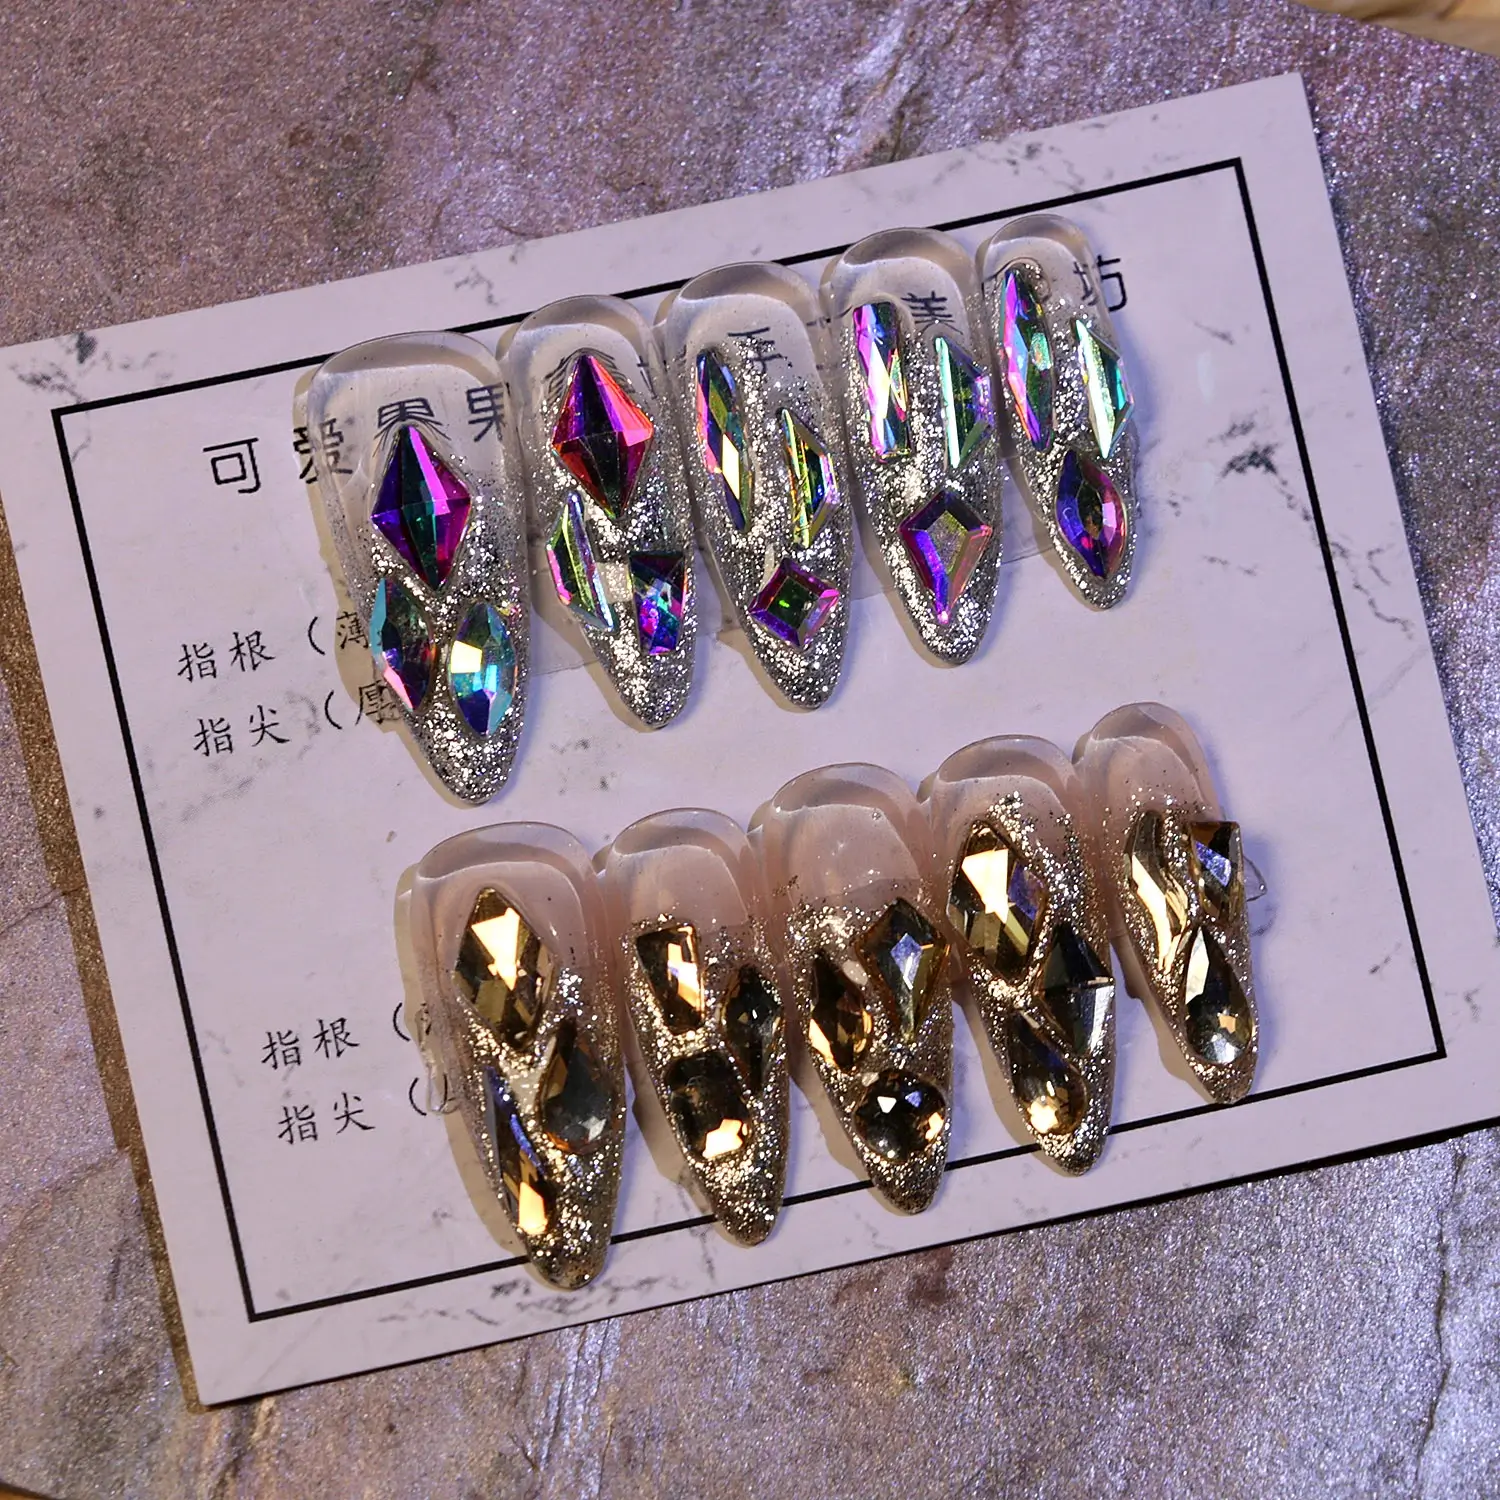 Crystal Rhinestones Pearls Wheels Nail Body Art Face Gems Festival Craft  DIY | eBay